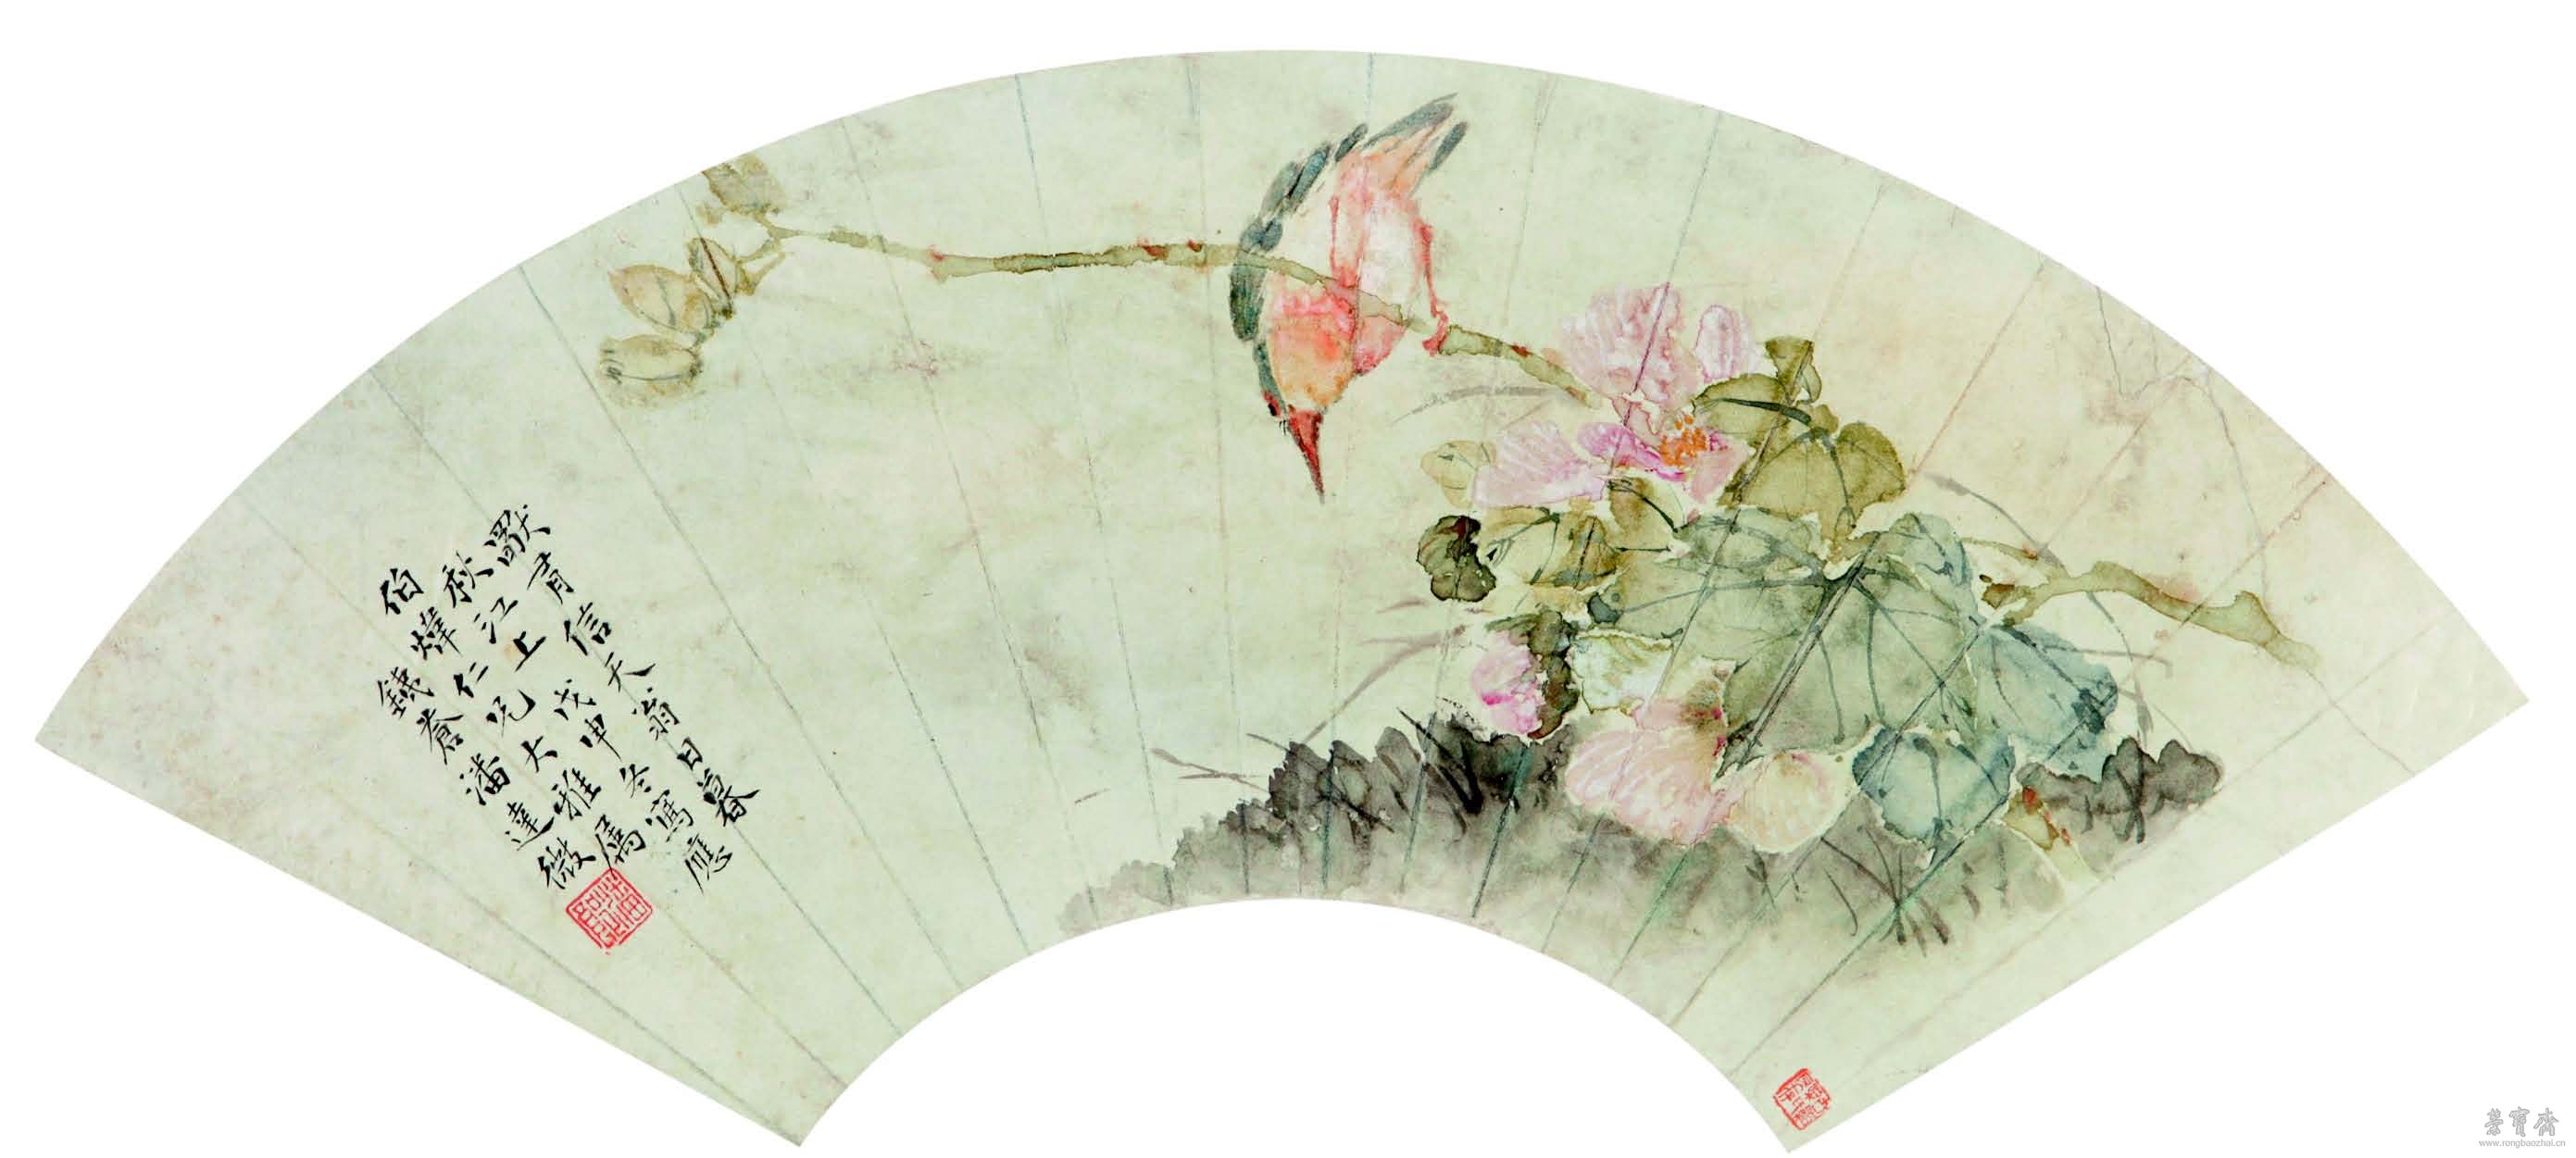 潘达微 花卉扇面 18cm×51cm 纸本设色 广东省博物馆藏